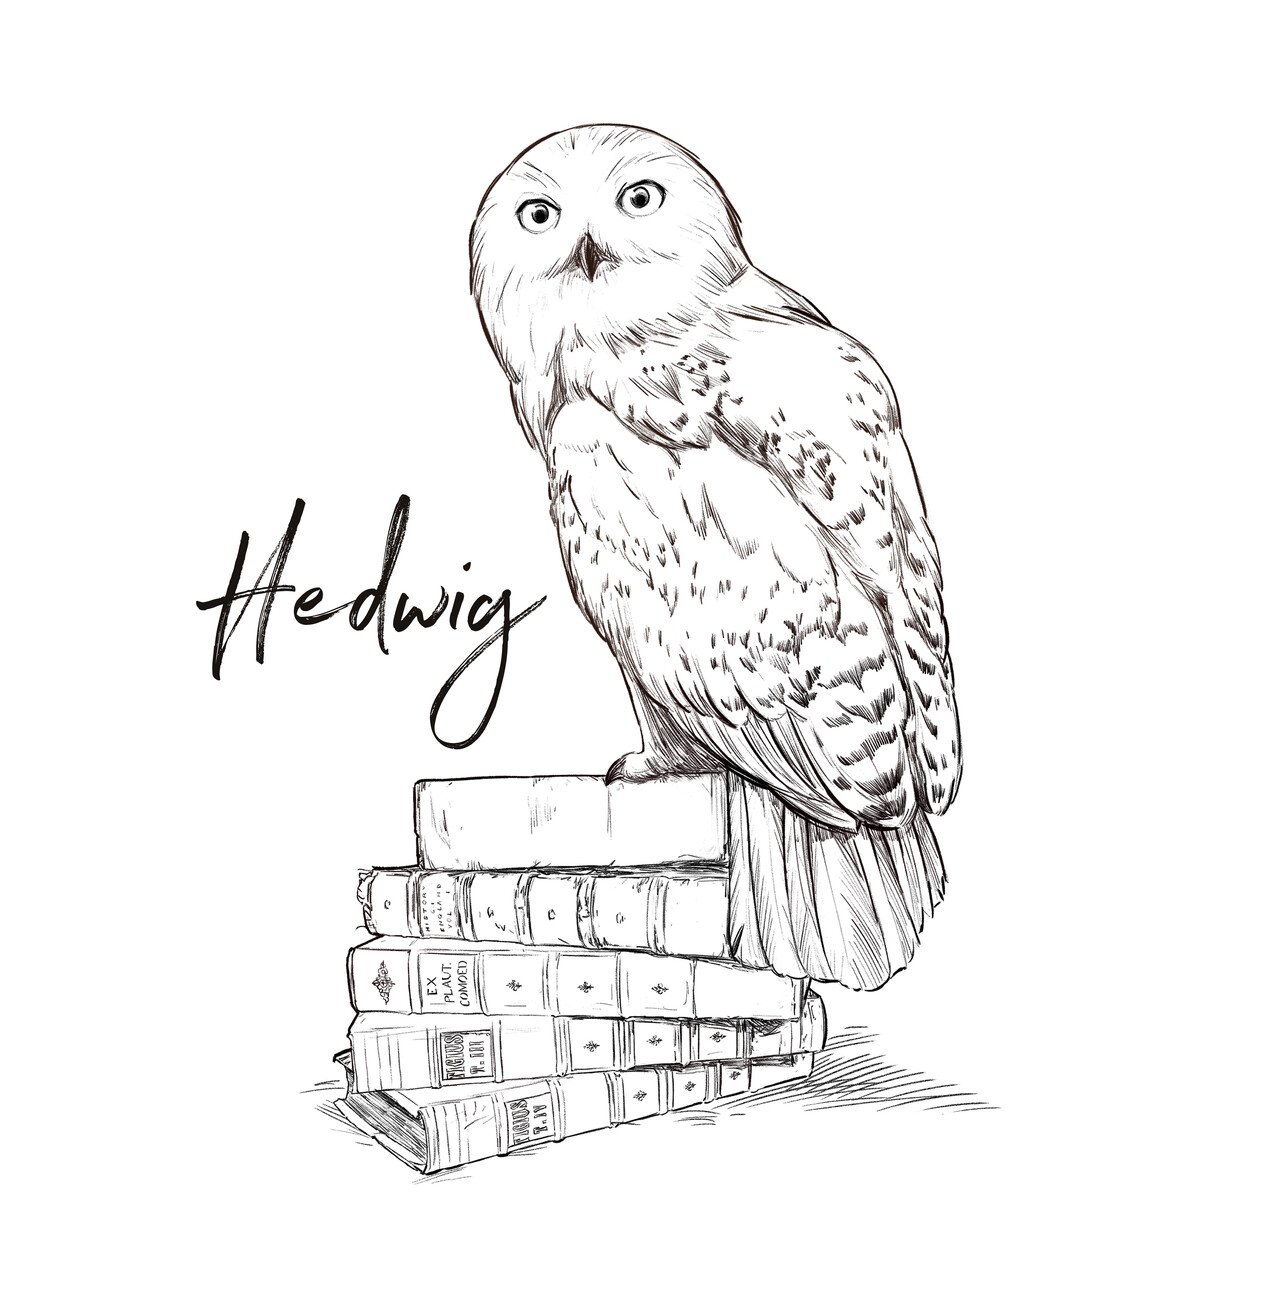 Figurine de jeu Harry Potter - Harry Potter et Hedwig